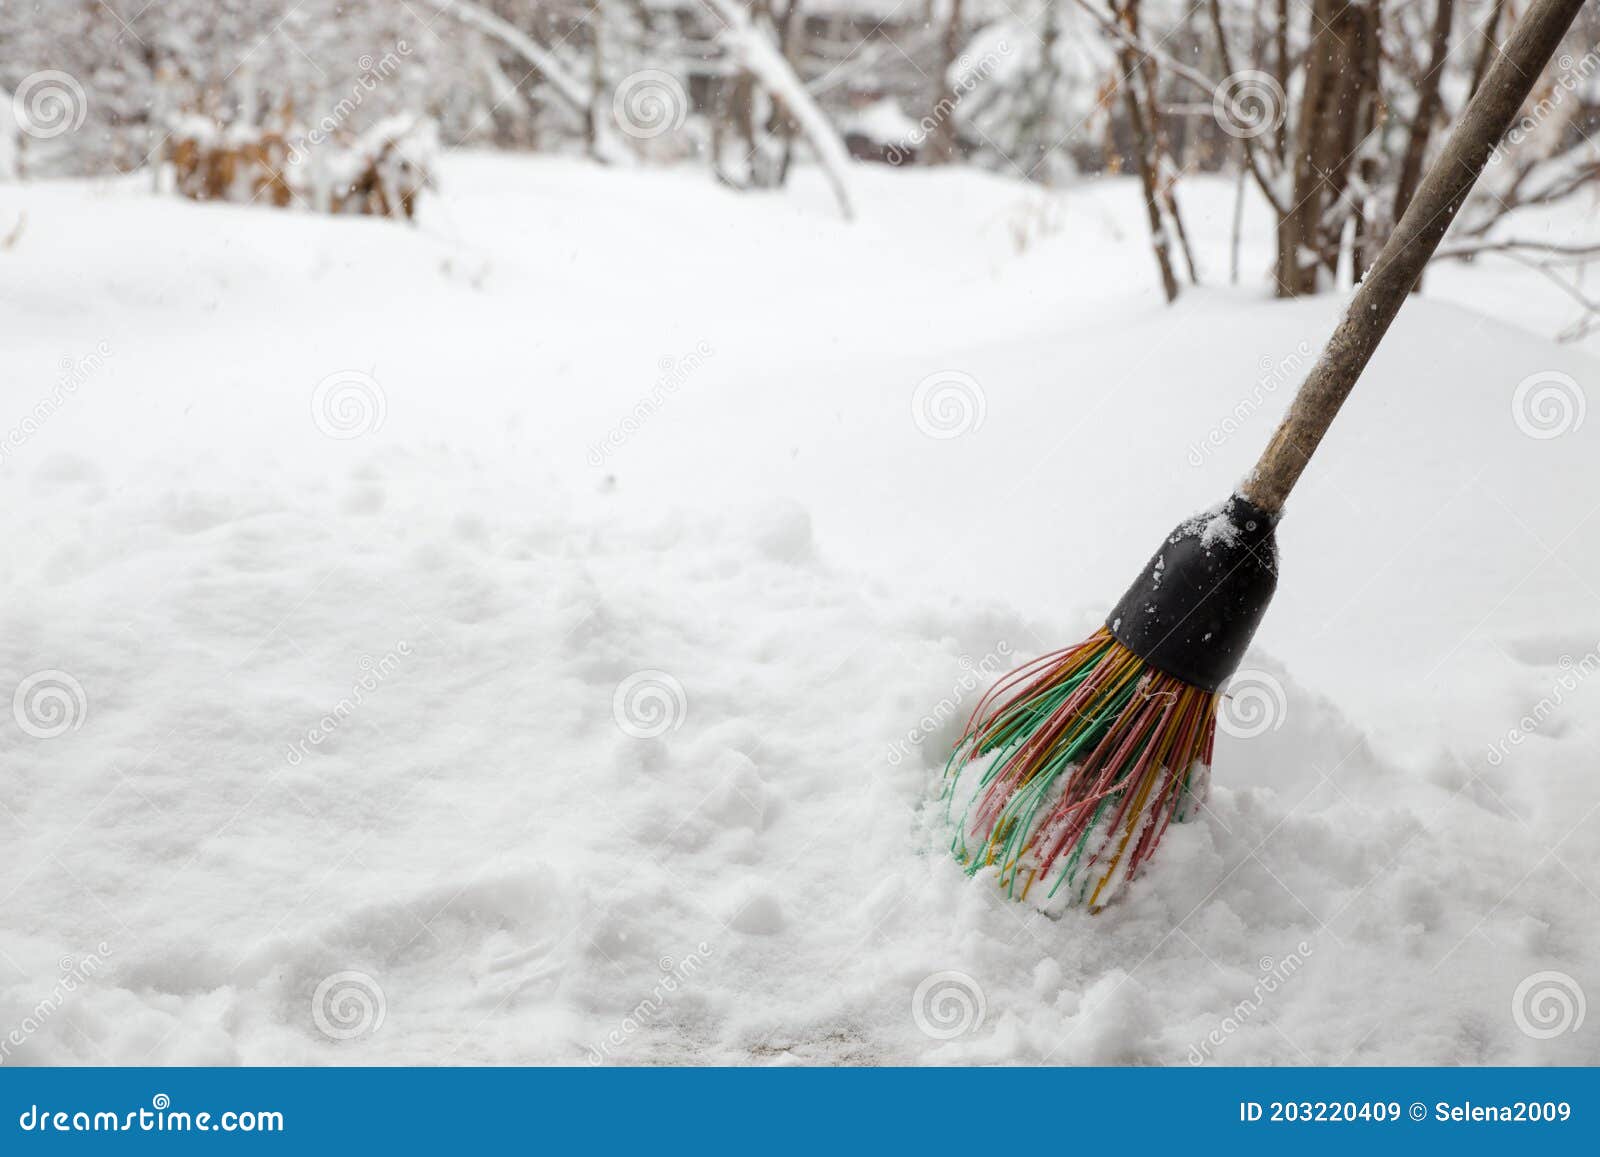 Ein Besen Im Schnee. Schneeräumung Im Winter. Ein Besen Fegt Den Schnee Für  Prävention Stockbild - Bild von schleife, oberfläche: 203220409